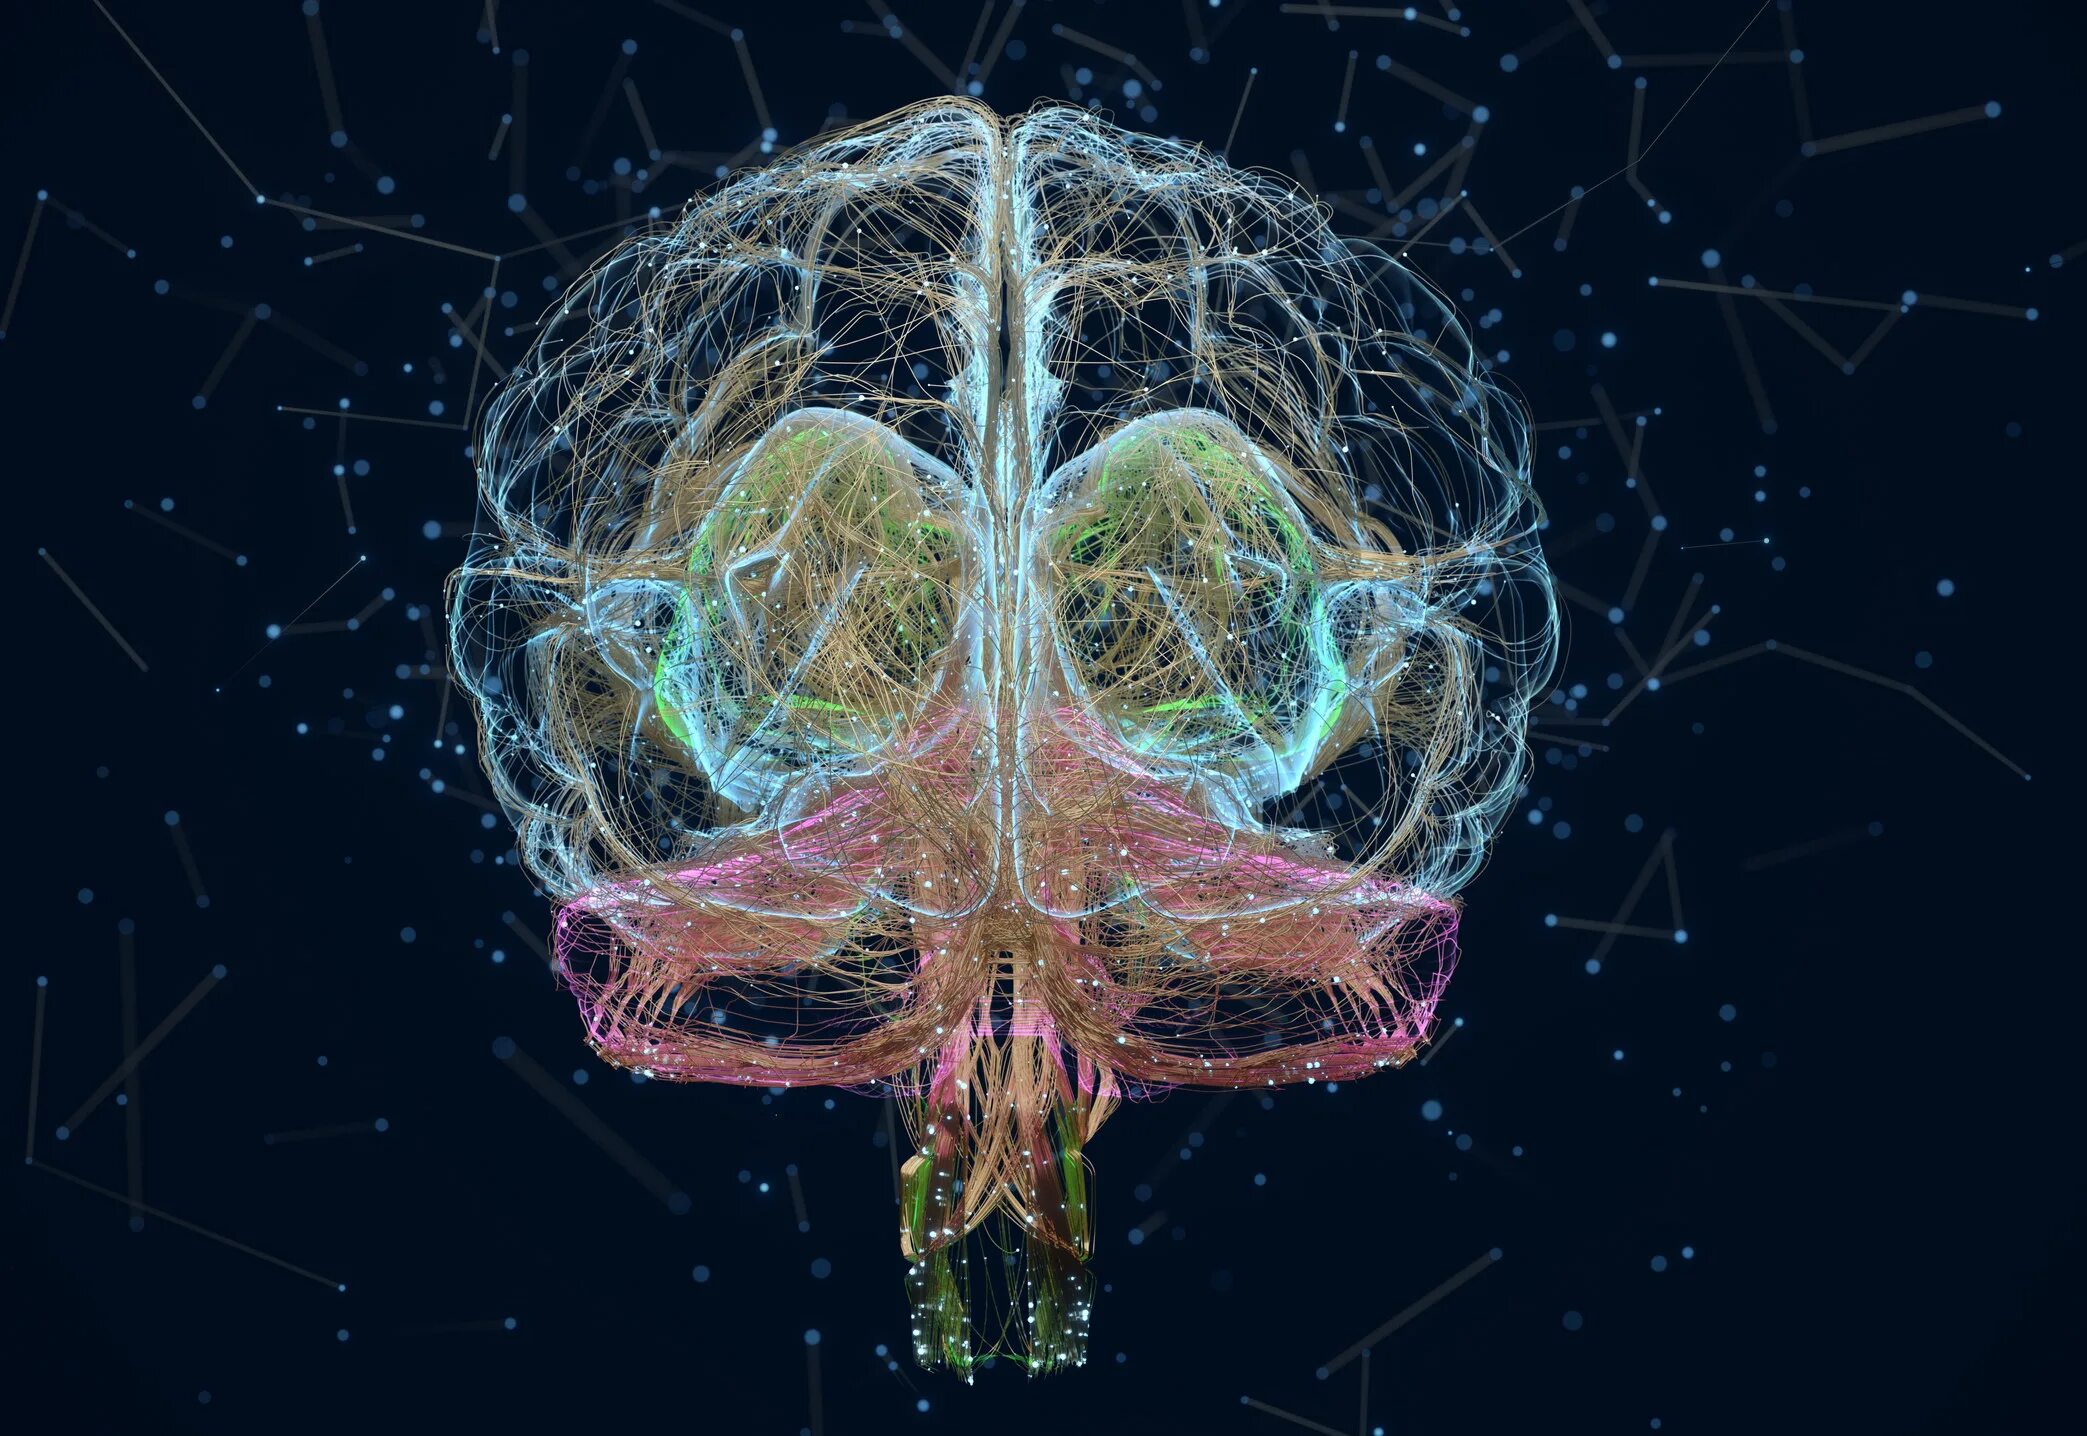 Brain 70. Нейроны мозга. Нейронная сеть мозга. Нейробиология мозга. Нейронные связи в мозге.